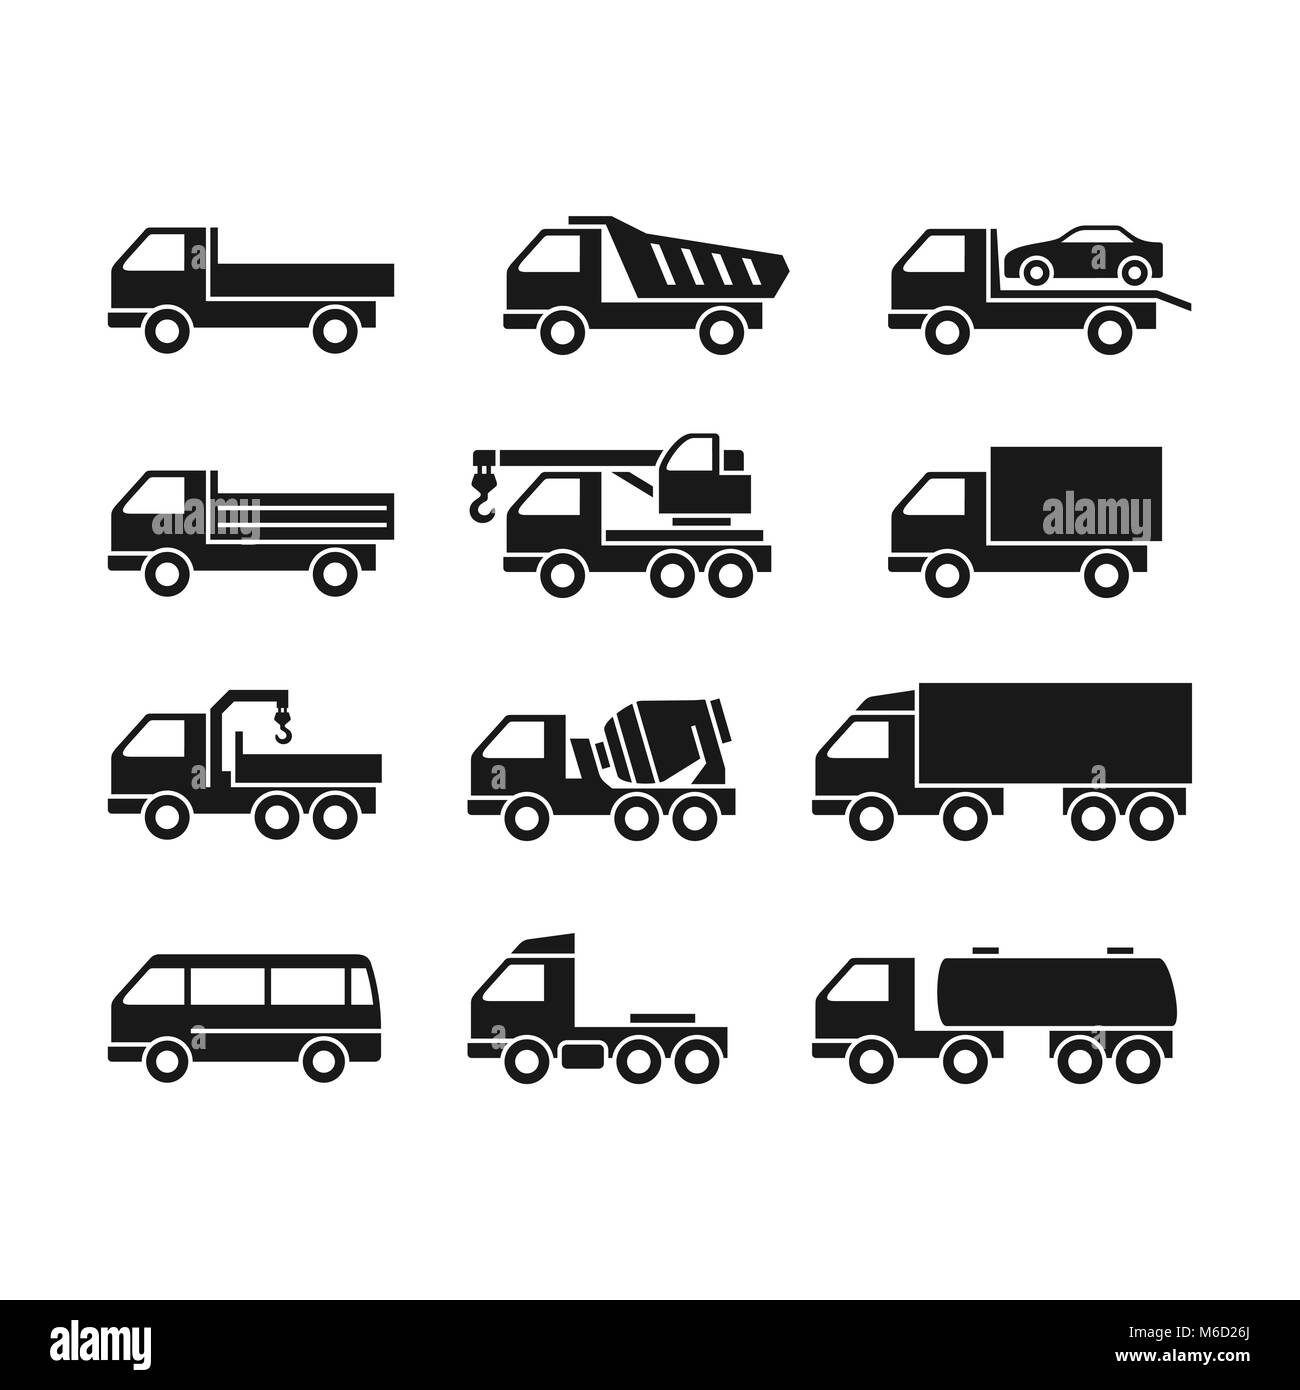 Set Di Icone Di Camion Su Uno Sfondo Bianco I Carrelli Di Differente Funzione Immagine E Vettoriale Alamy